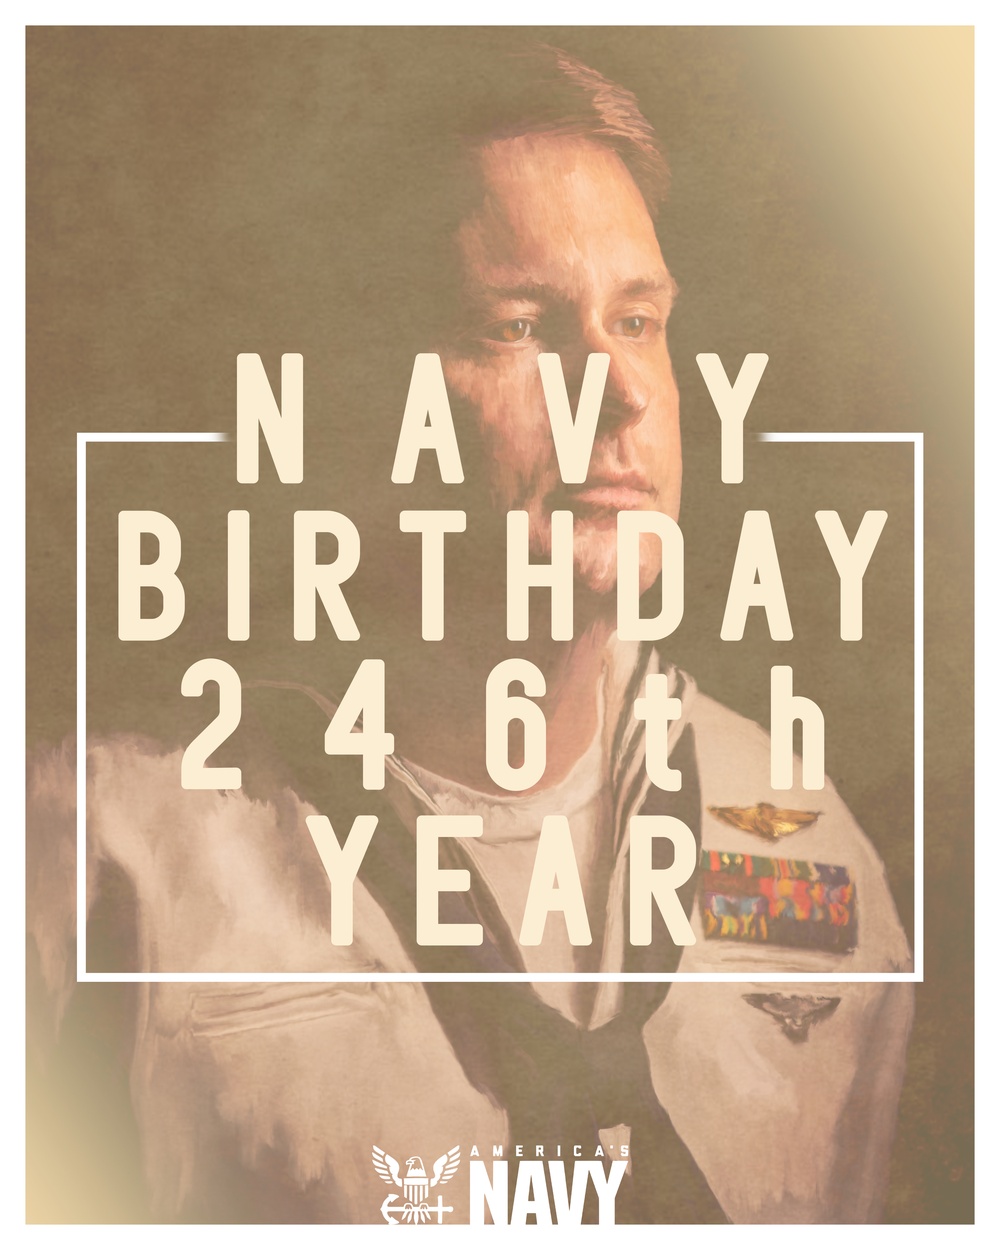 CFAY Celebrates Navy Birthday